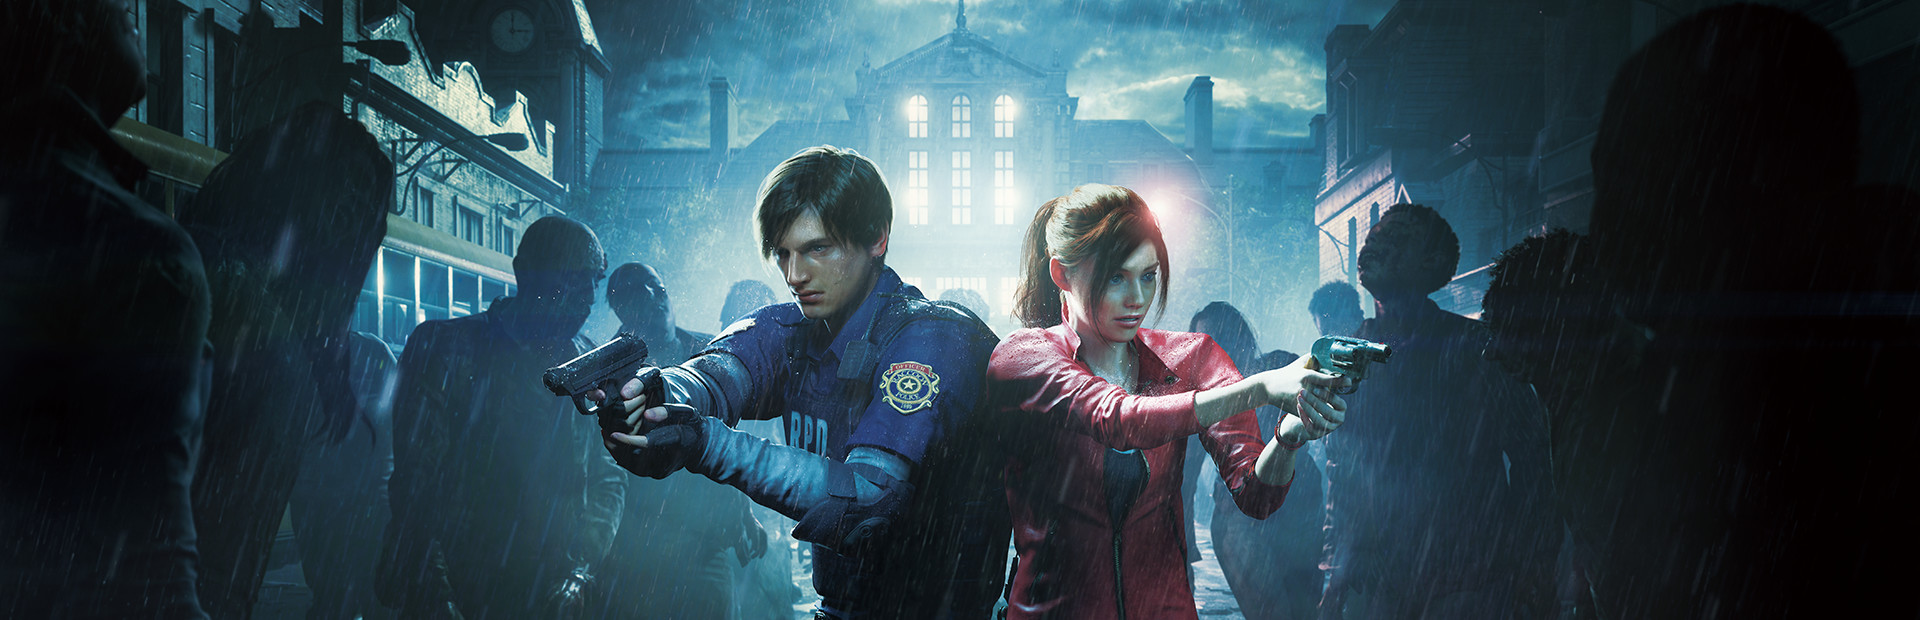 Resident Evil 2 cover image